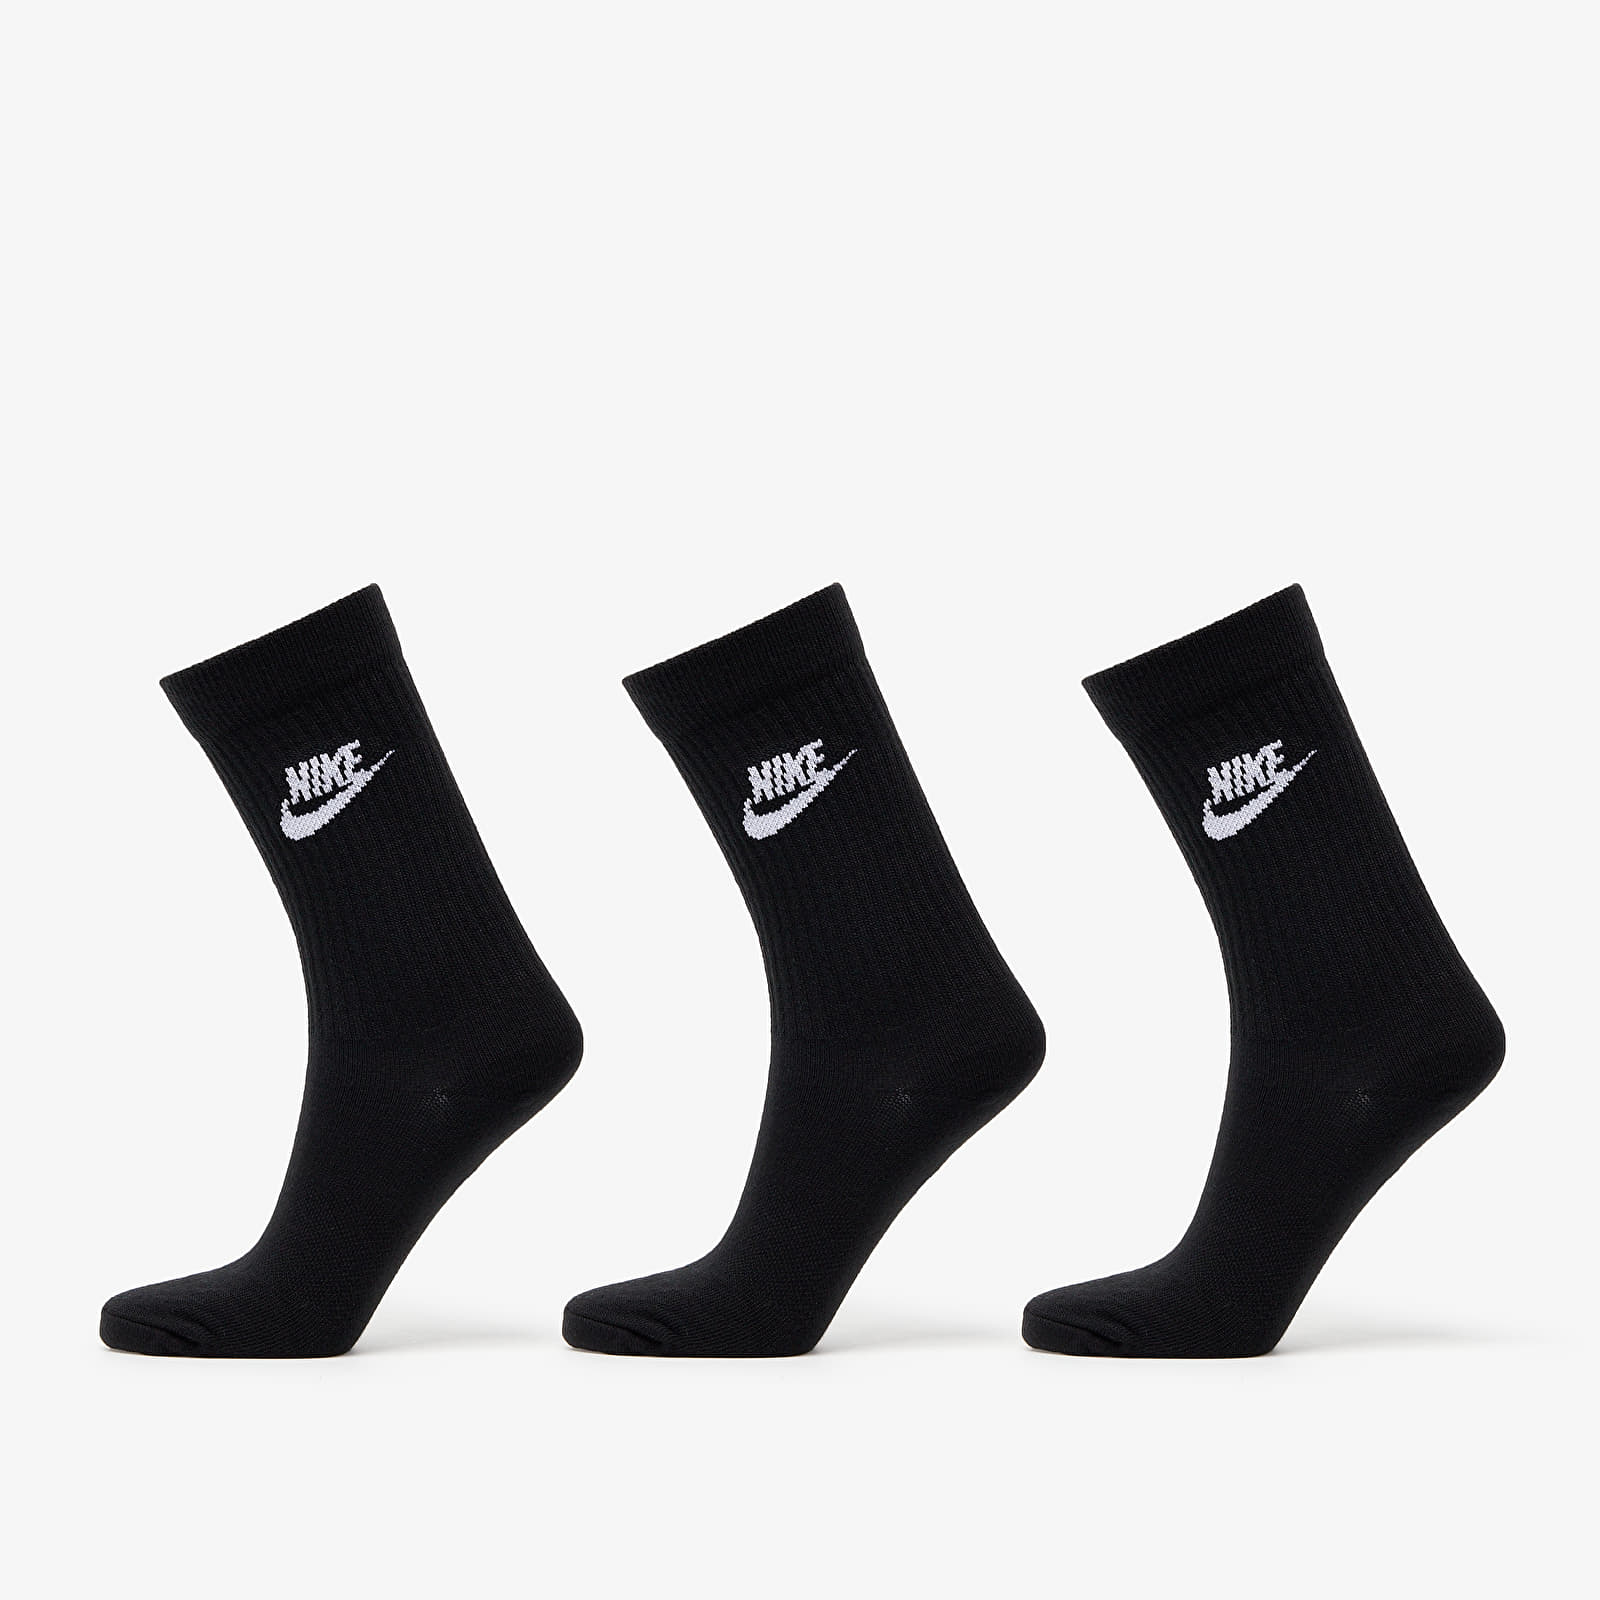 Socks Nike Sportwears Everyday Essential Crew 3-Pack Socks Black/ White